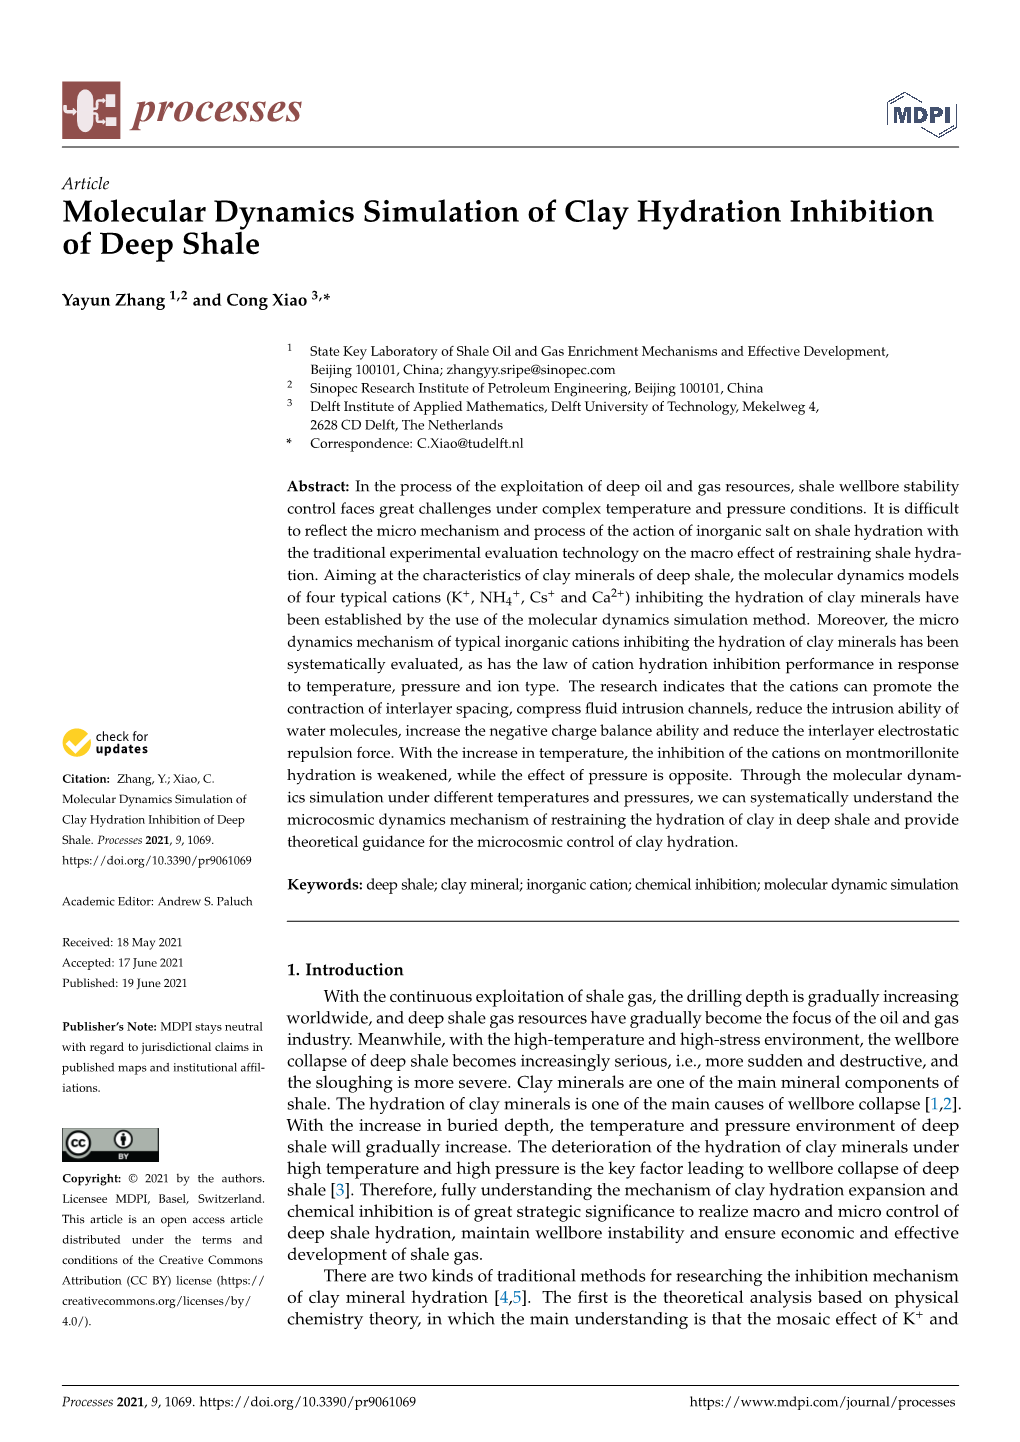 Molecular Dynamics Simulation of Clay Hydration Inhibition of Deep Shale